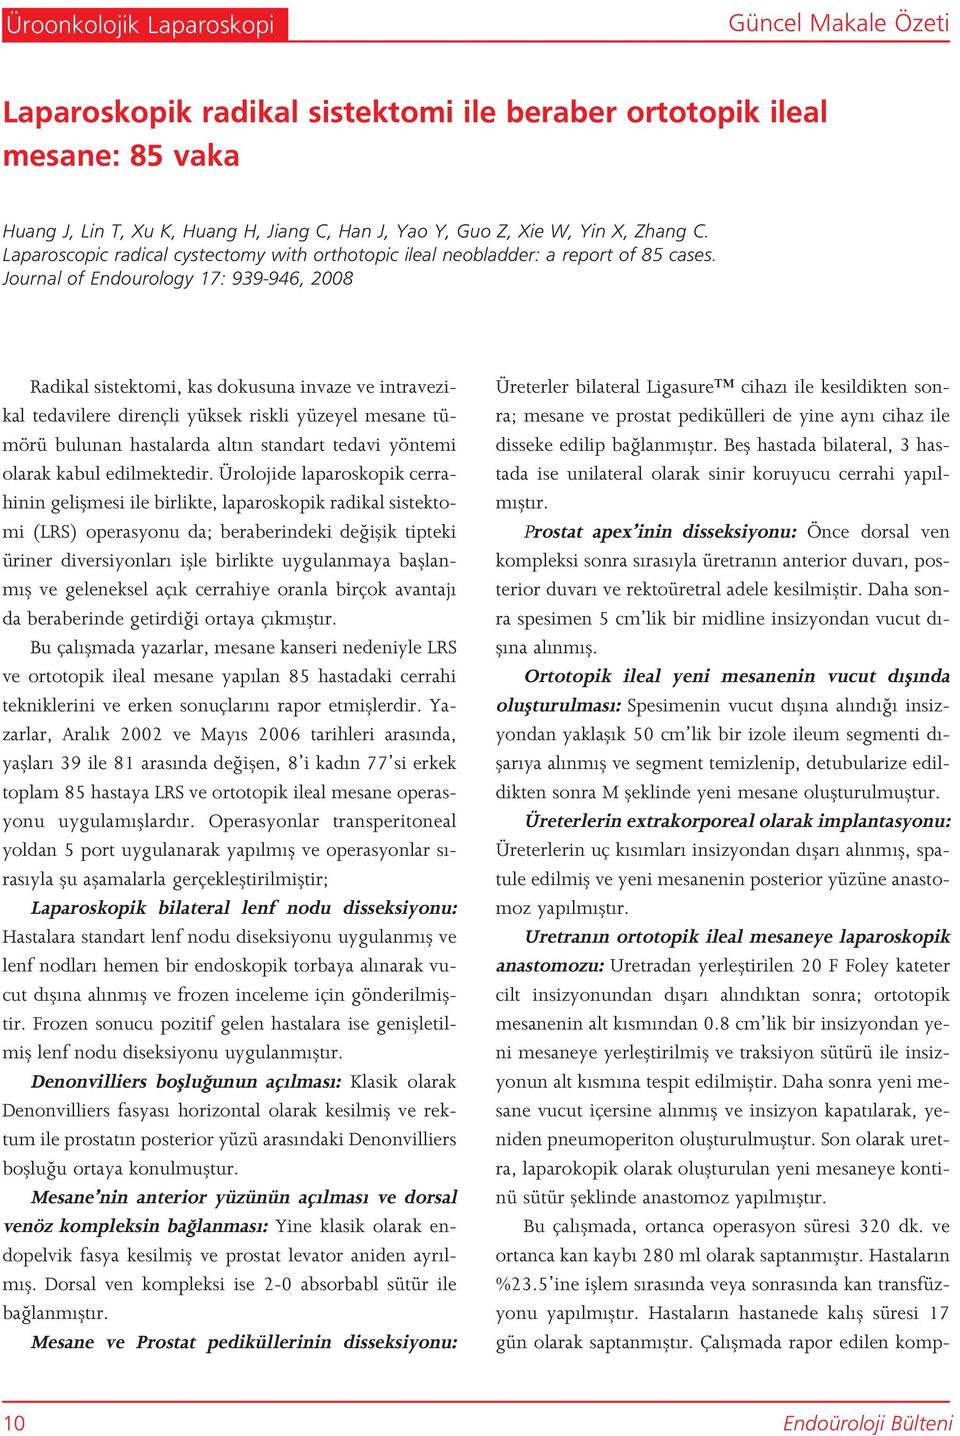 Journal of Endourology 17: 939-946, 2008 Radikal sistektomi, kas dokusuna invaze ve intravezikal tedavilere dirençli yüksek riskli yüzeyel mesane tümörü bulunan hastalarda alt n standart tedavi